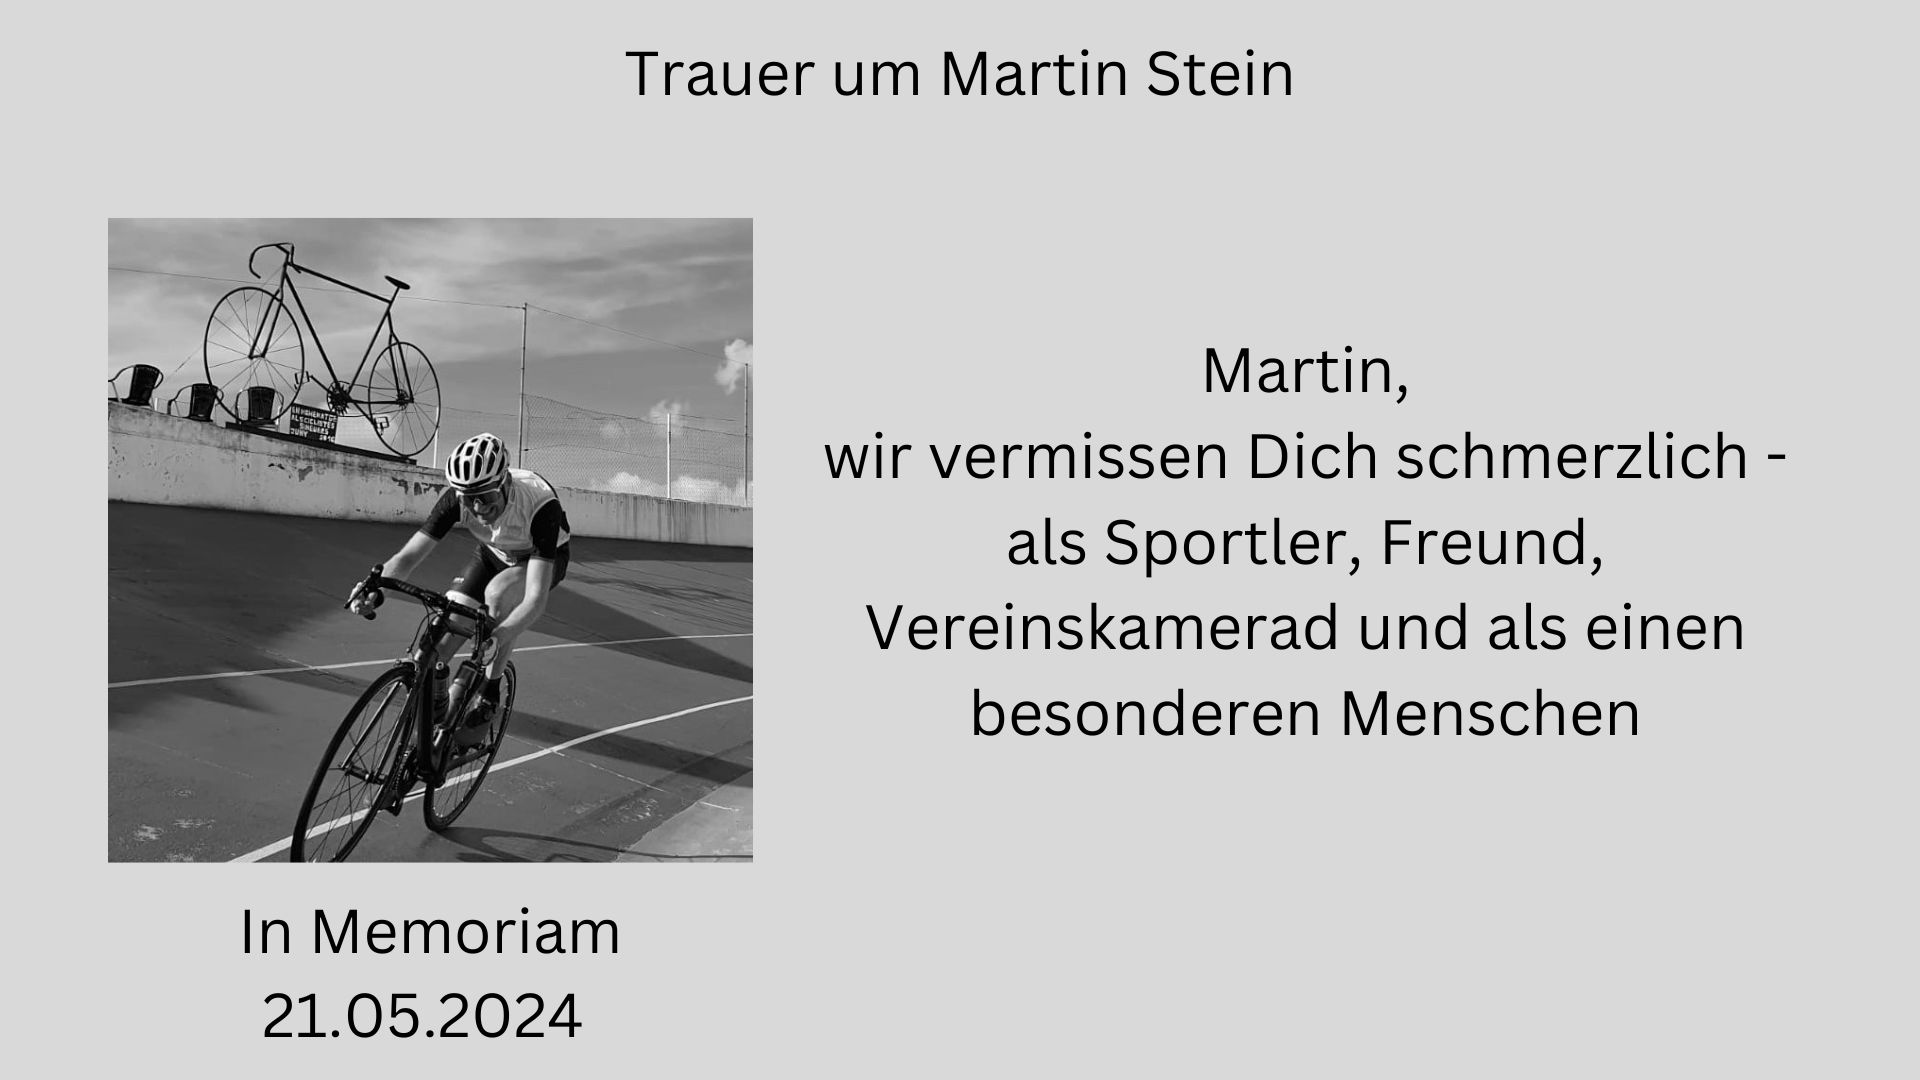 Trauer um Martin Stein